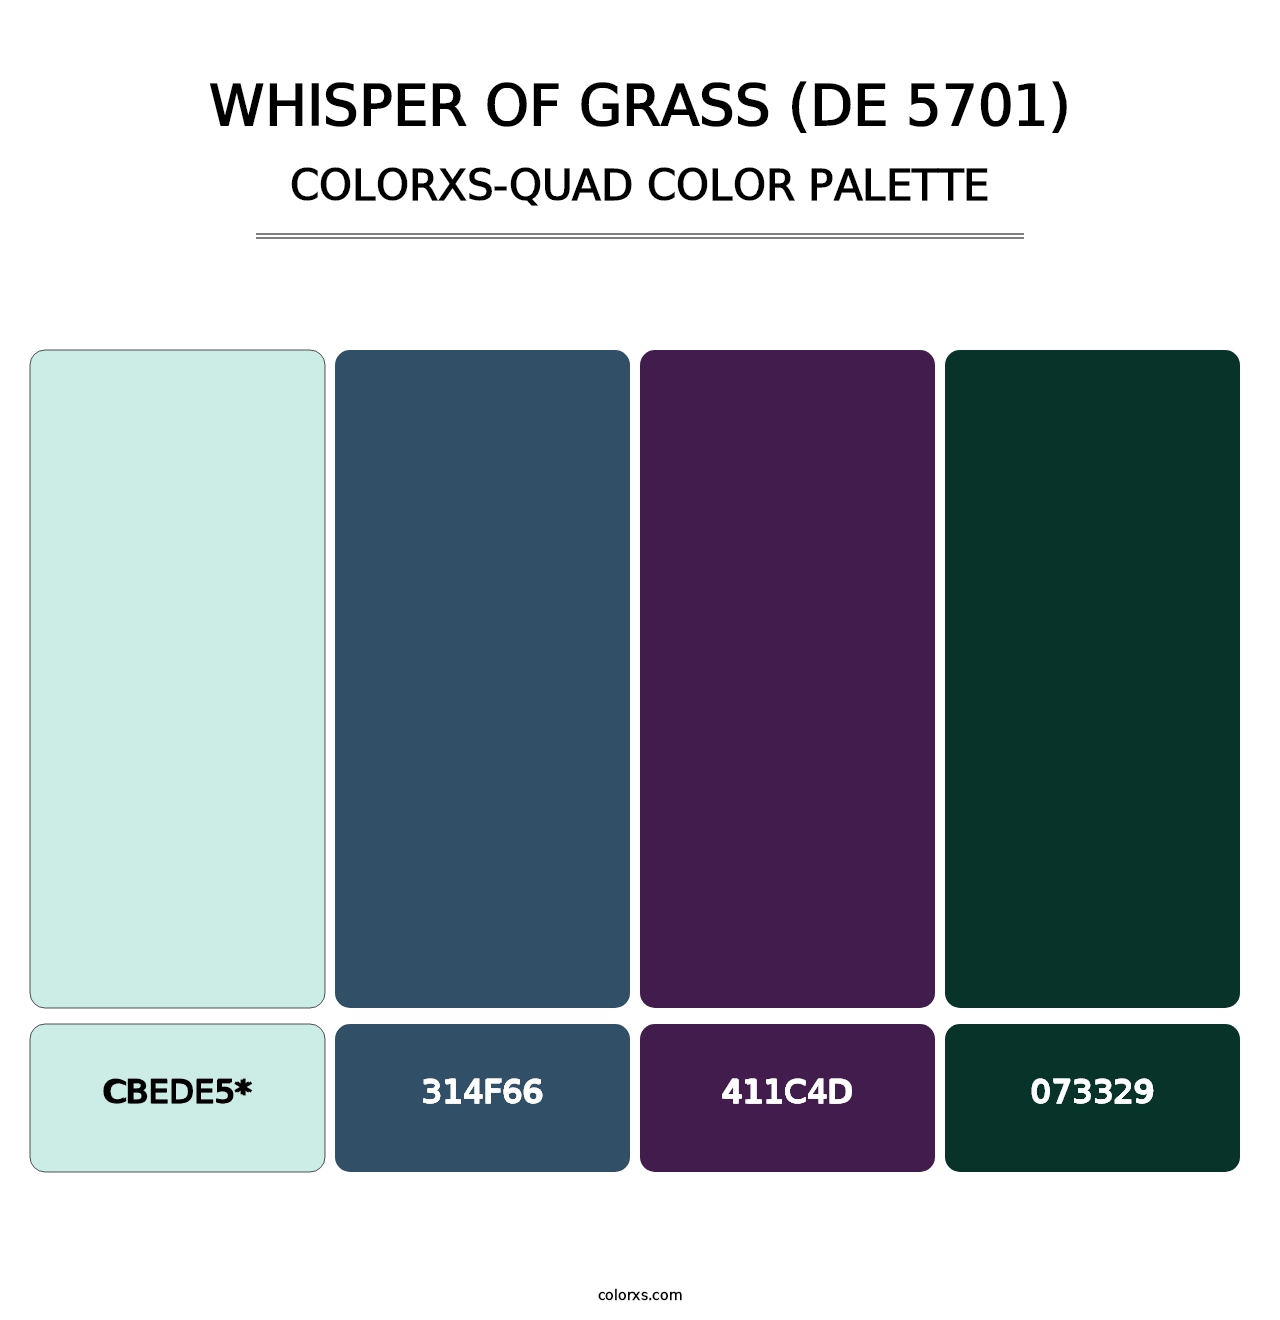 Whisper of Grass (DE 5701) - Colorxs Quad Palette